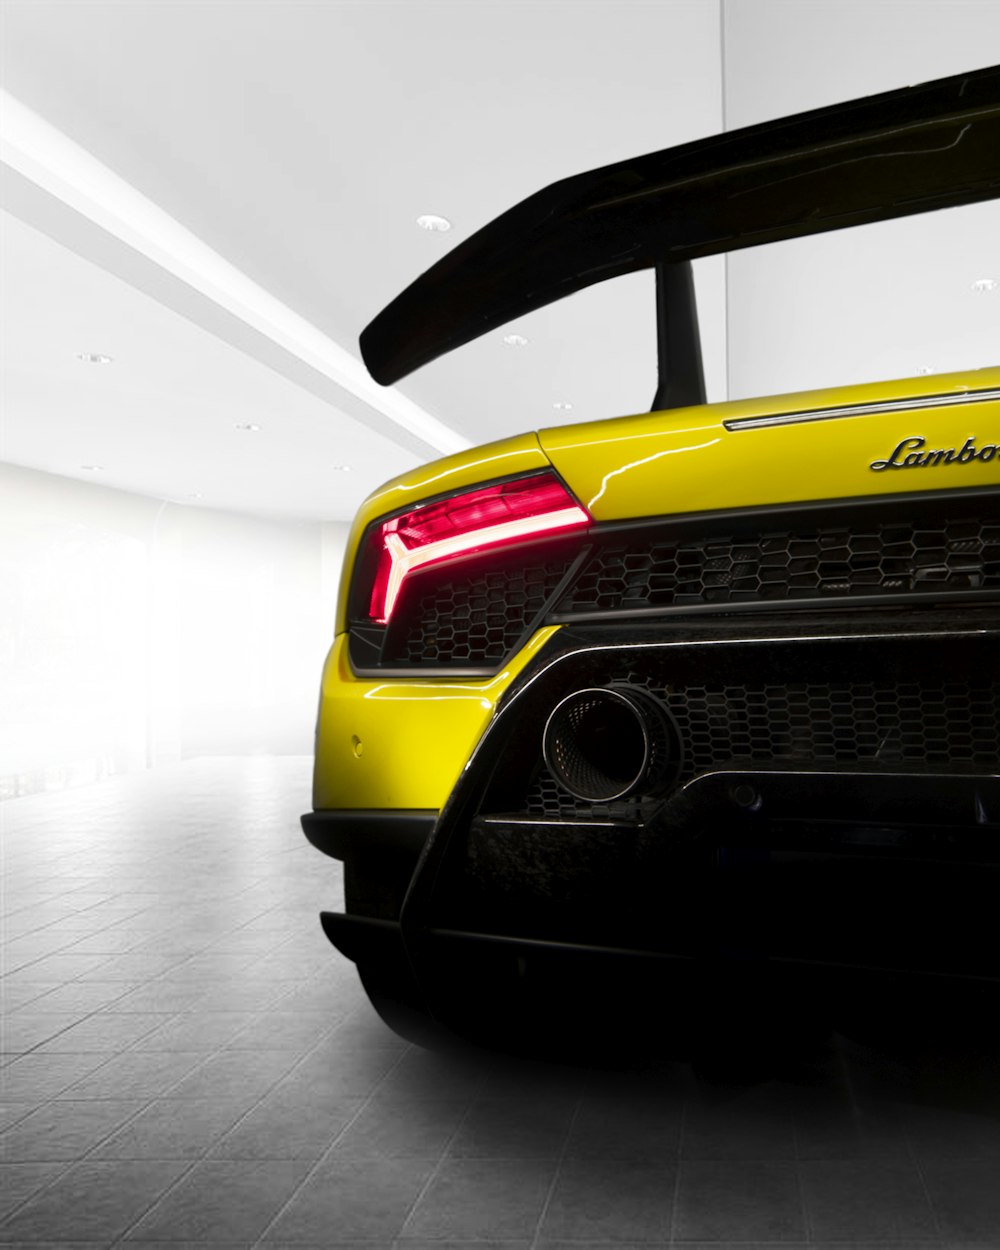 schermata del veicolo Lamborghini giallo e nero